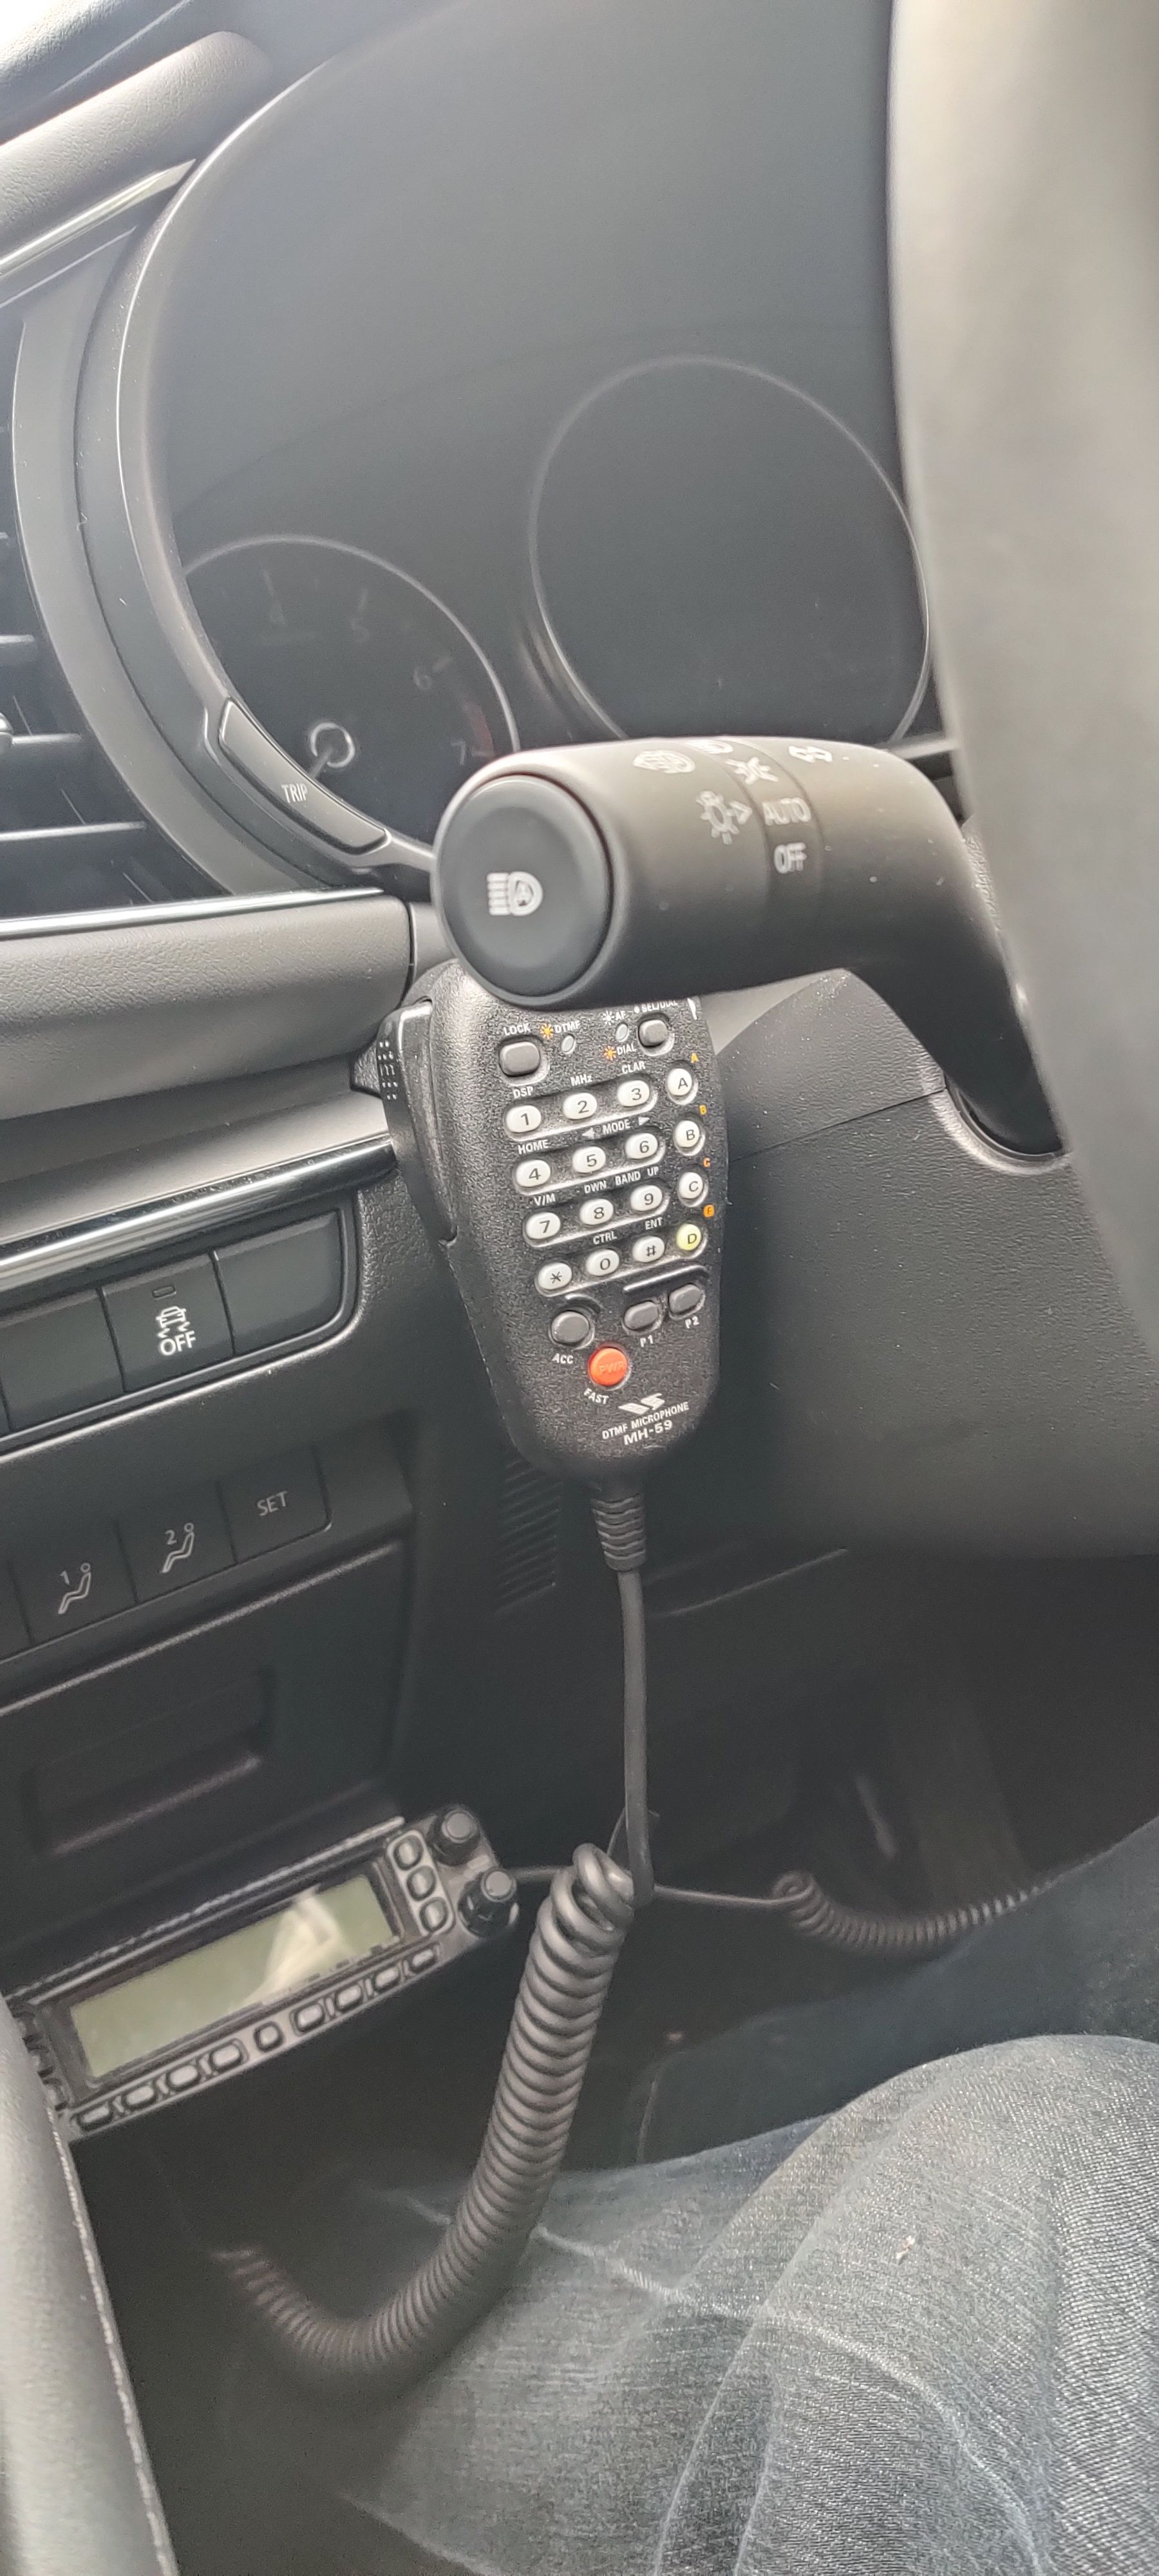 FT-857D mic on left side of steering column.